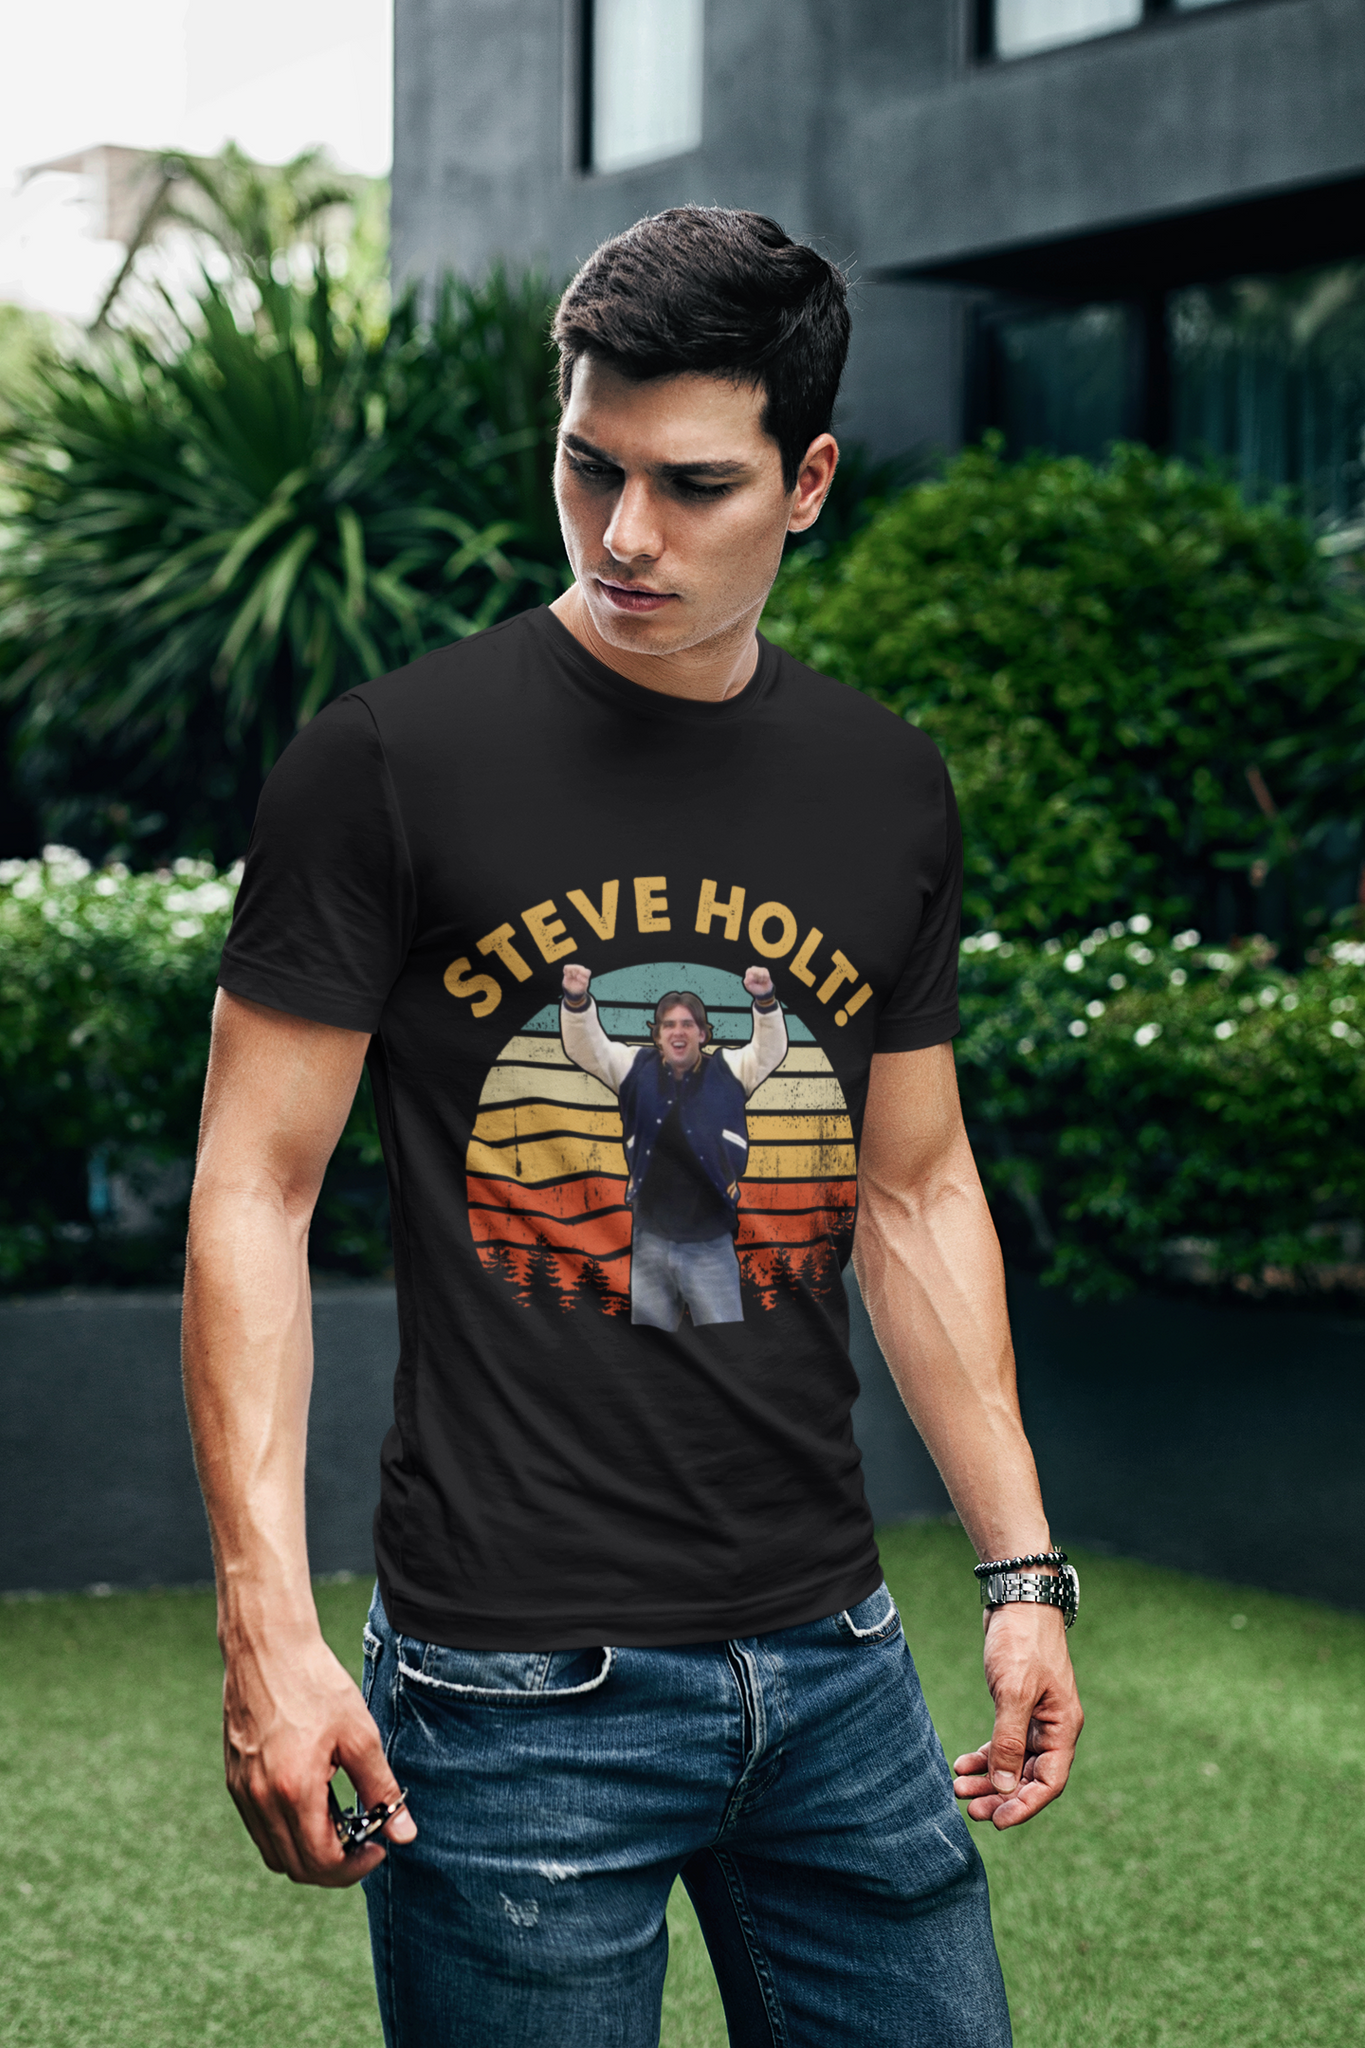 Arrested Development Vintage T Shirt, Steve Holt Tshirt